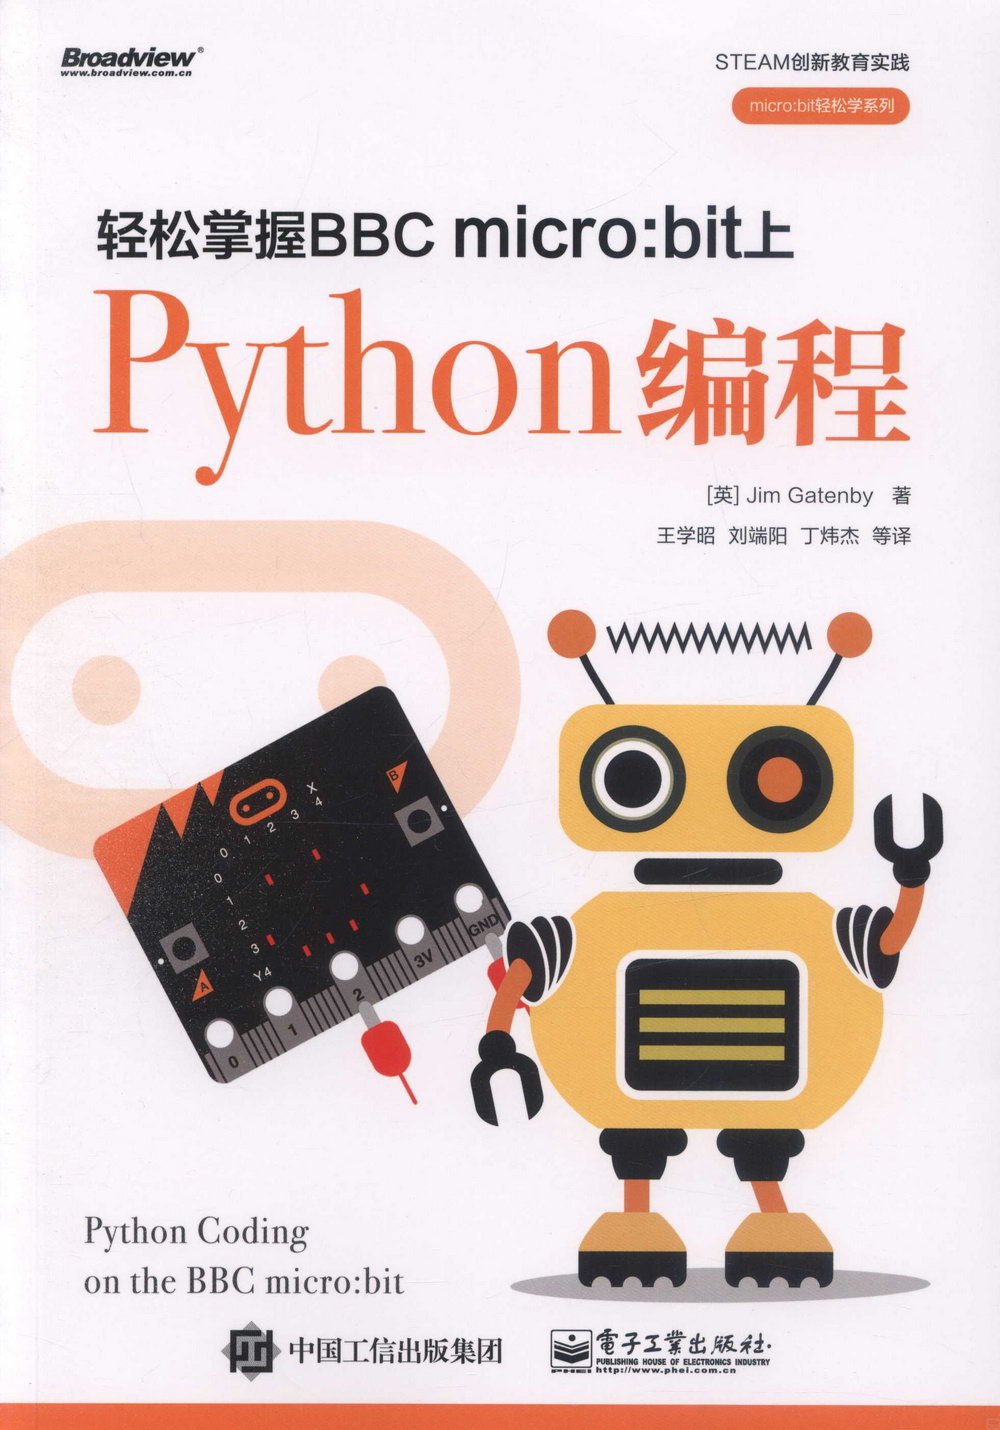 輕鬆掌握BBC micro:bit上Python編程